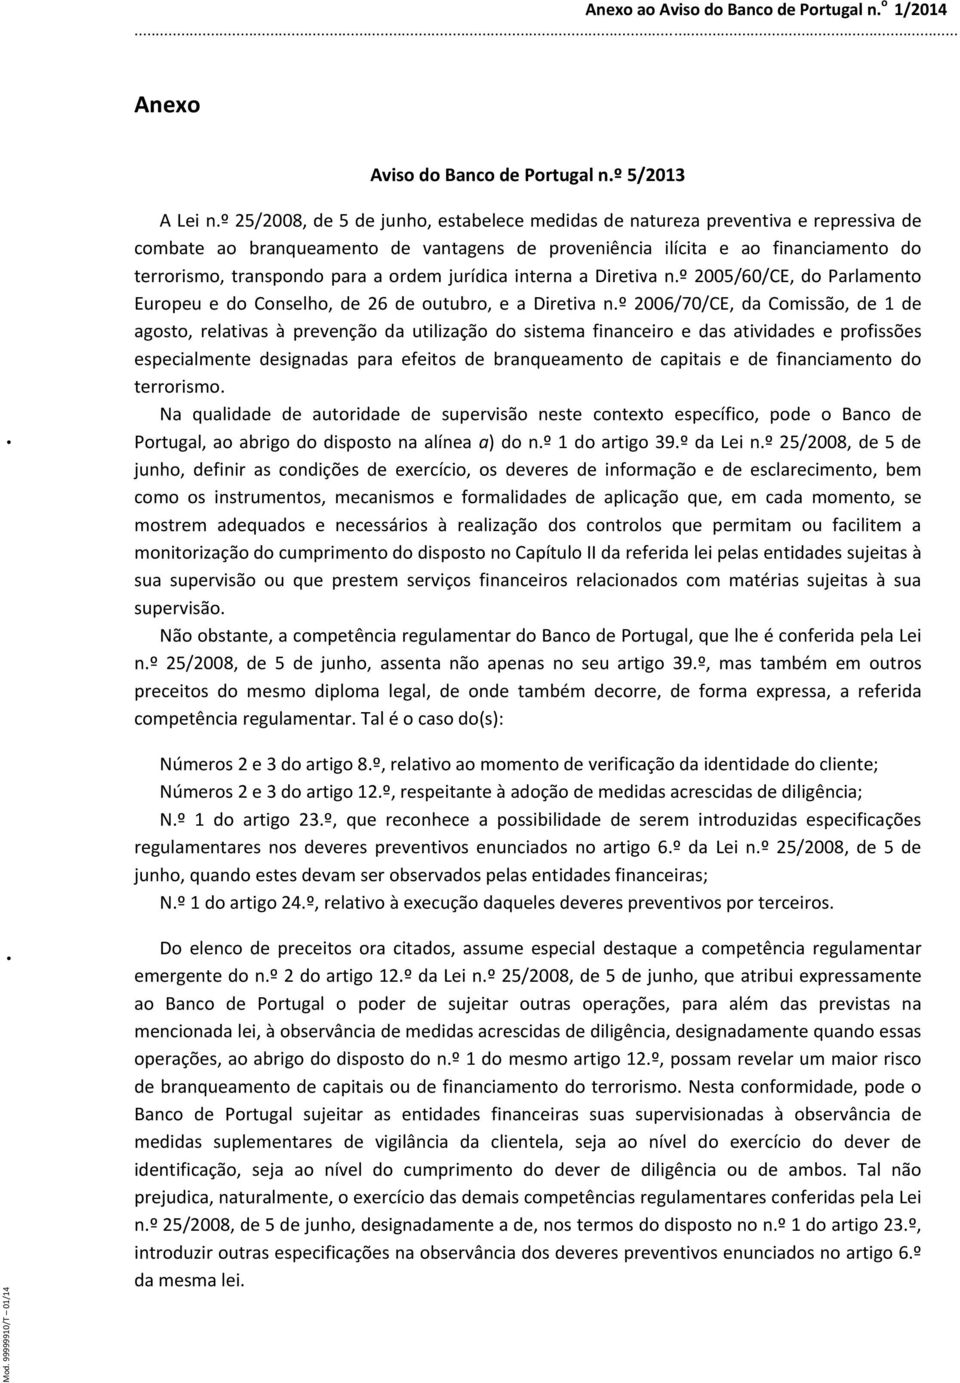 ordem jurídica interna a Diretiva n.º 2005/60/CE, do Parlamento Europeu e do Conselho, de 26 de outubro, e a Diretiva n.